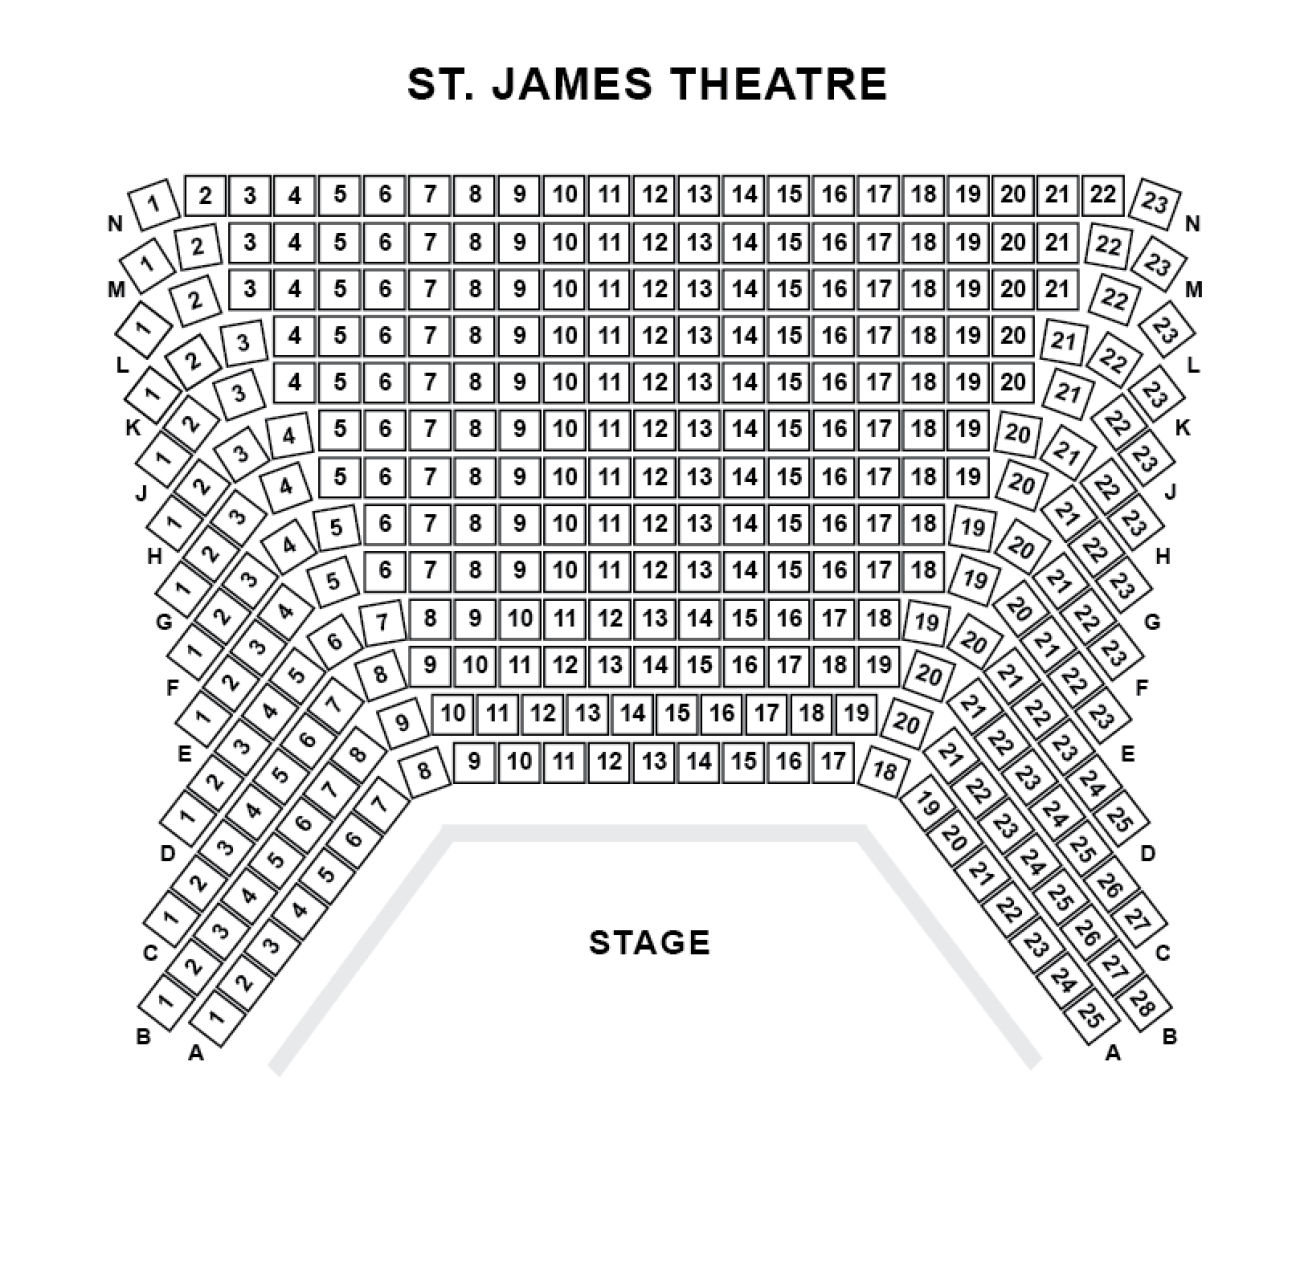 St. James Theatre - Plan de Salle